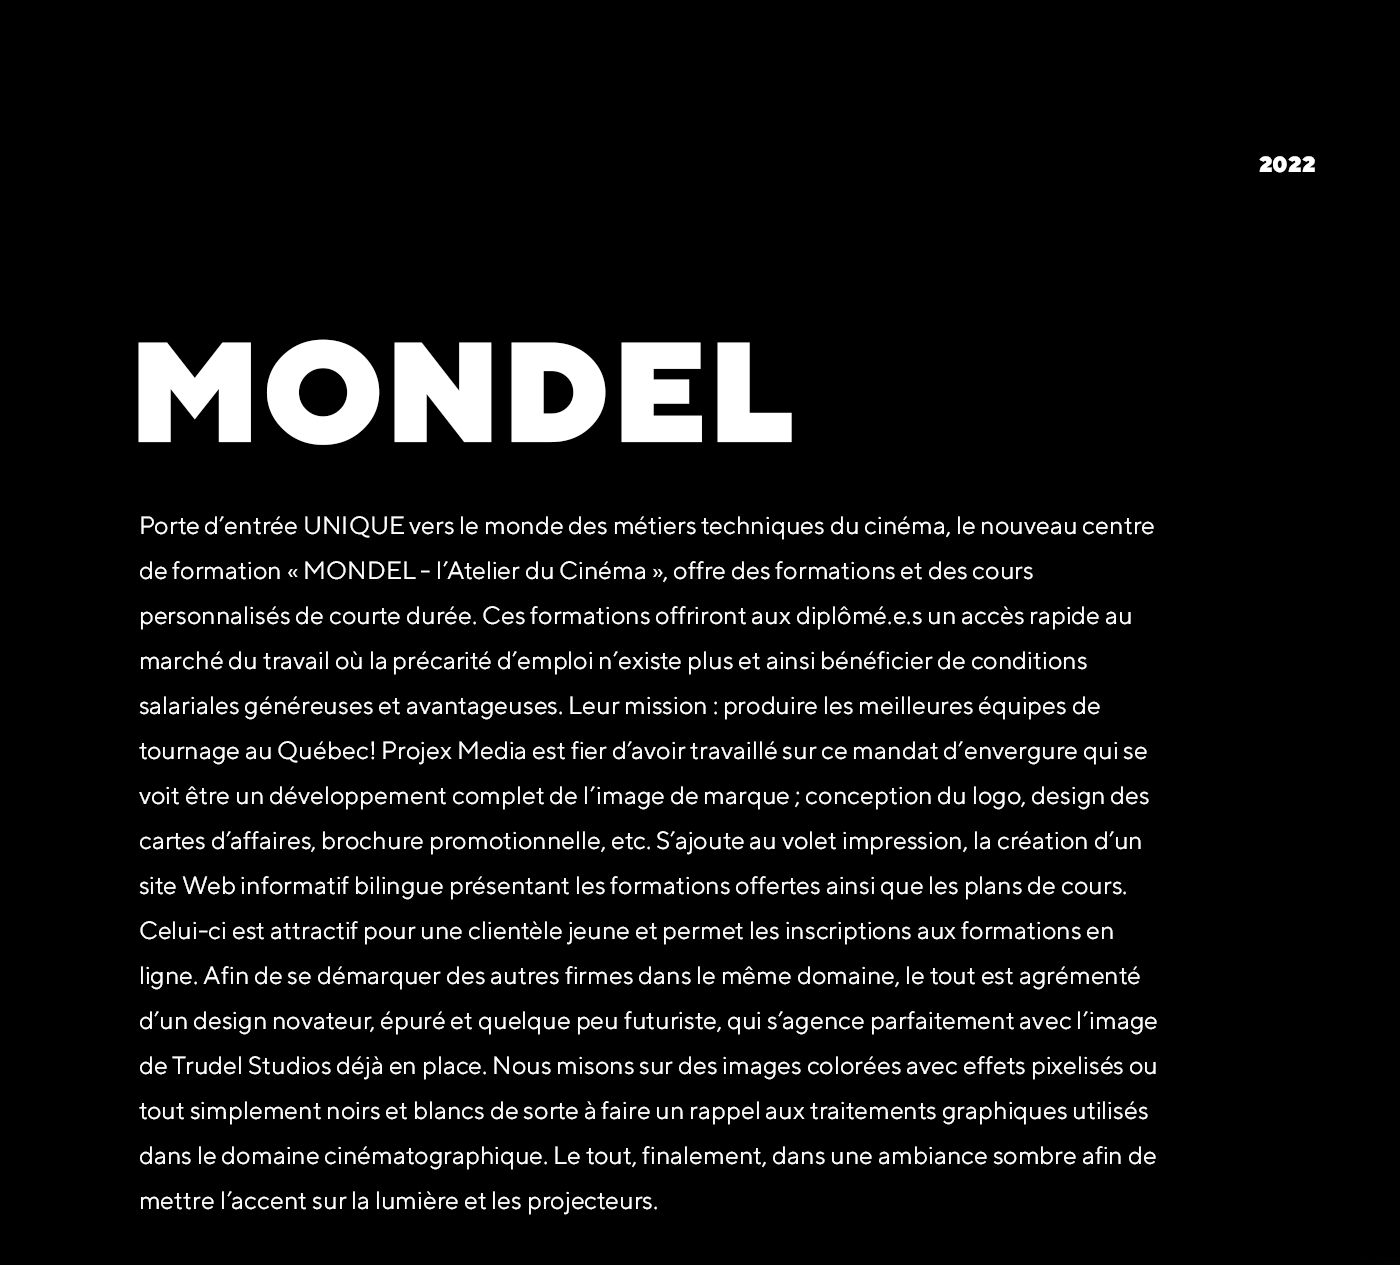 MONDEL - L'Atelier du Cinéma / 2022 - Réalisation signée Projex Media